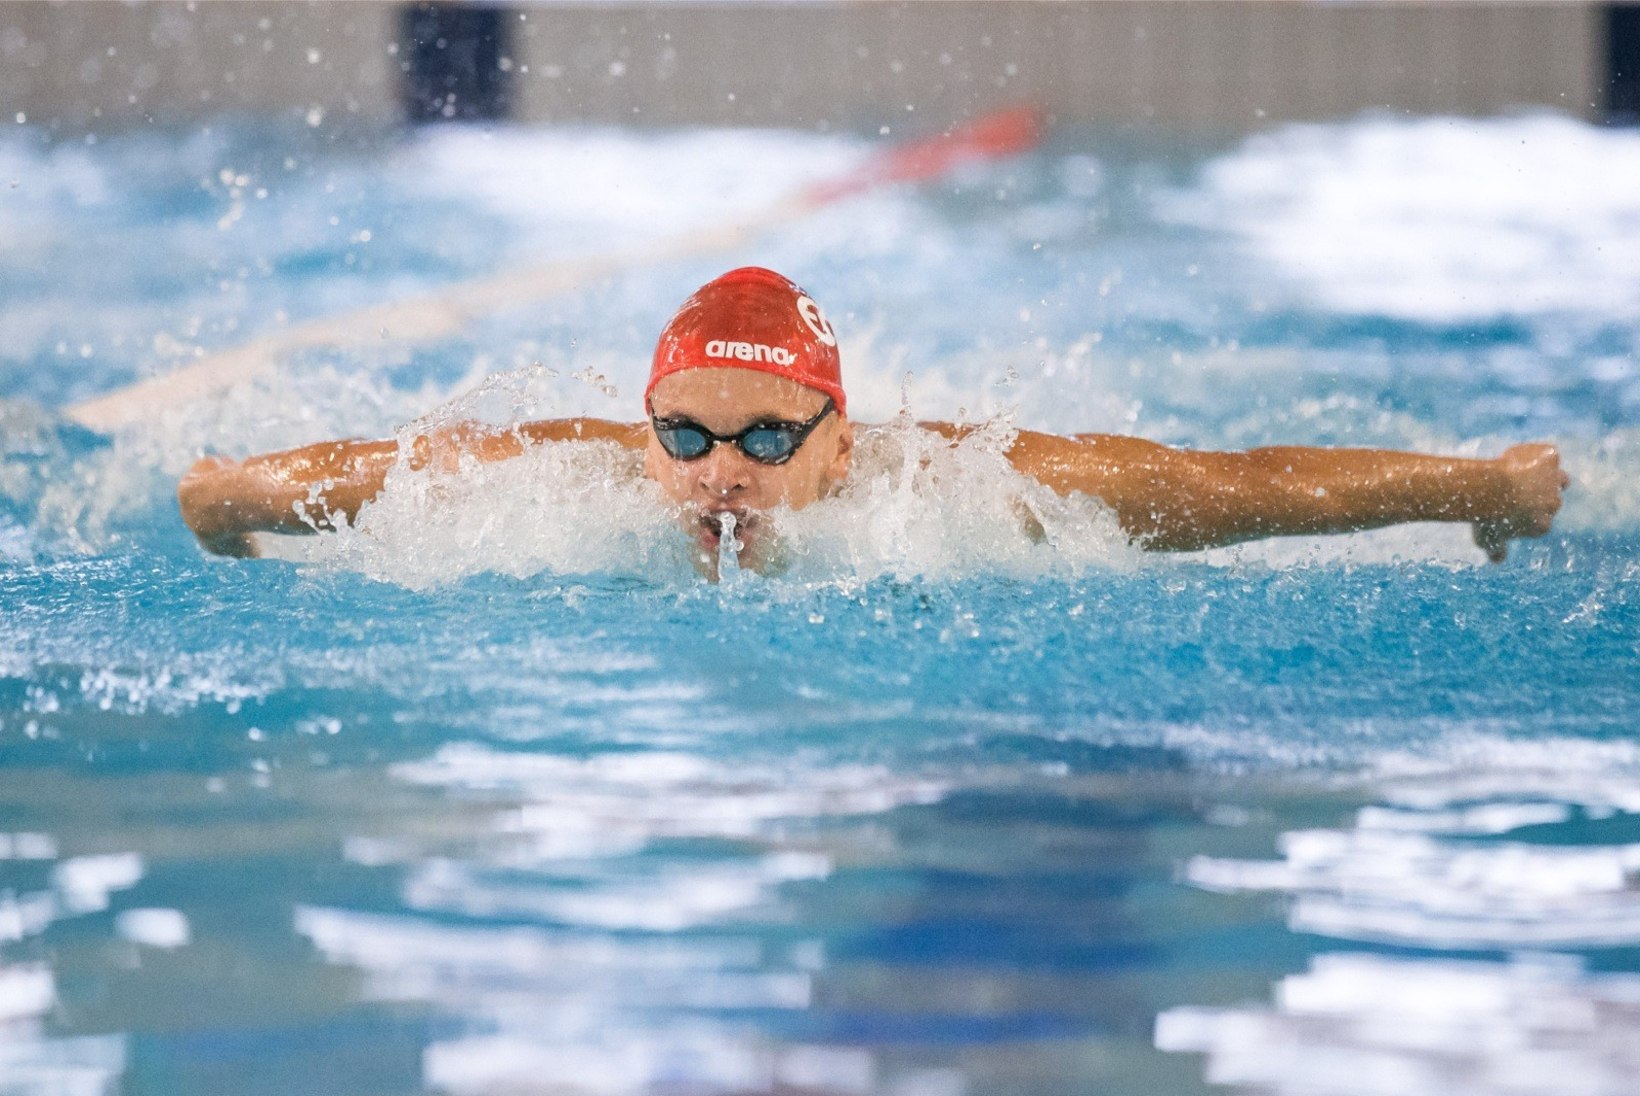 HEA UUDIS: Kregor Zirk saab ka järgmisel hooajal rahvusvahelises ujumisliigas võistelda